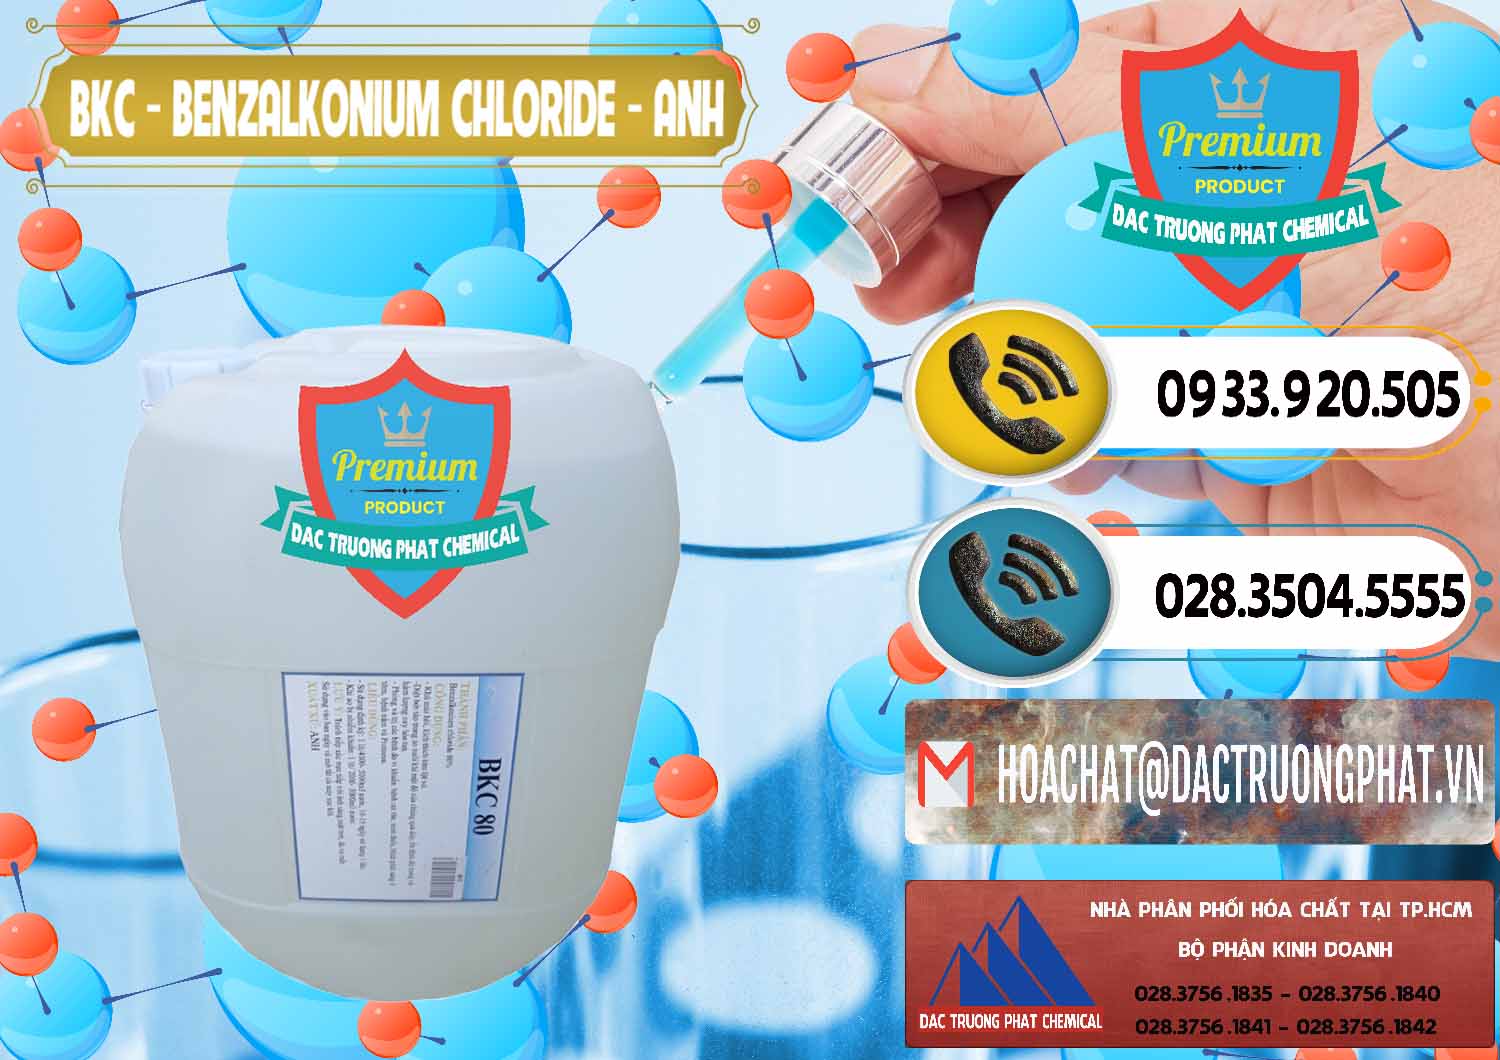 Cty cung cấp & bán BKC - Benzalkonium Chloride Anh Quốc Uk Kingdoms - 0415 - Phân phối ( cung ứng ) hóa chất tại TP.HCM - hoachatdetnhuom.vn